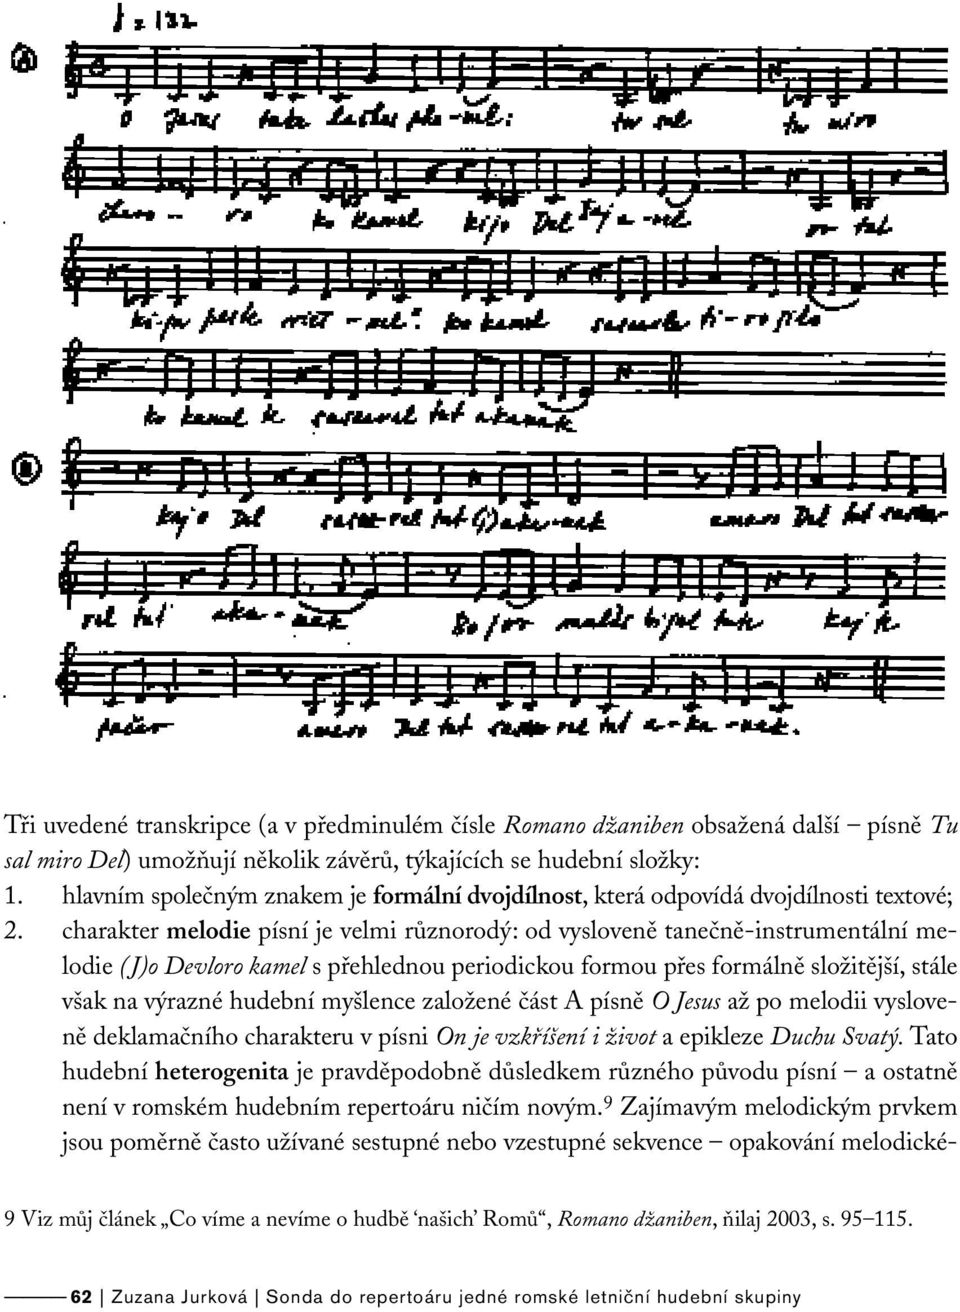 charakter melodie písní je velmi různorodý: od vysloveně tanečně-instrumentální melodie (J)o Devloro kamel s přehlednou periodickou formou přes formálně složitější, stále však na výrazné hudební